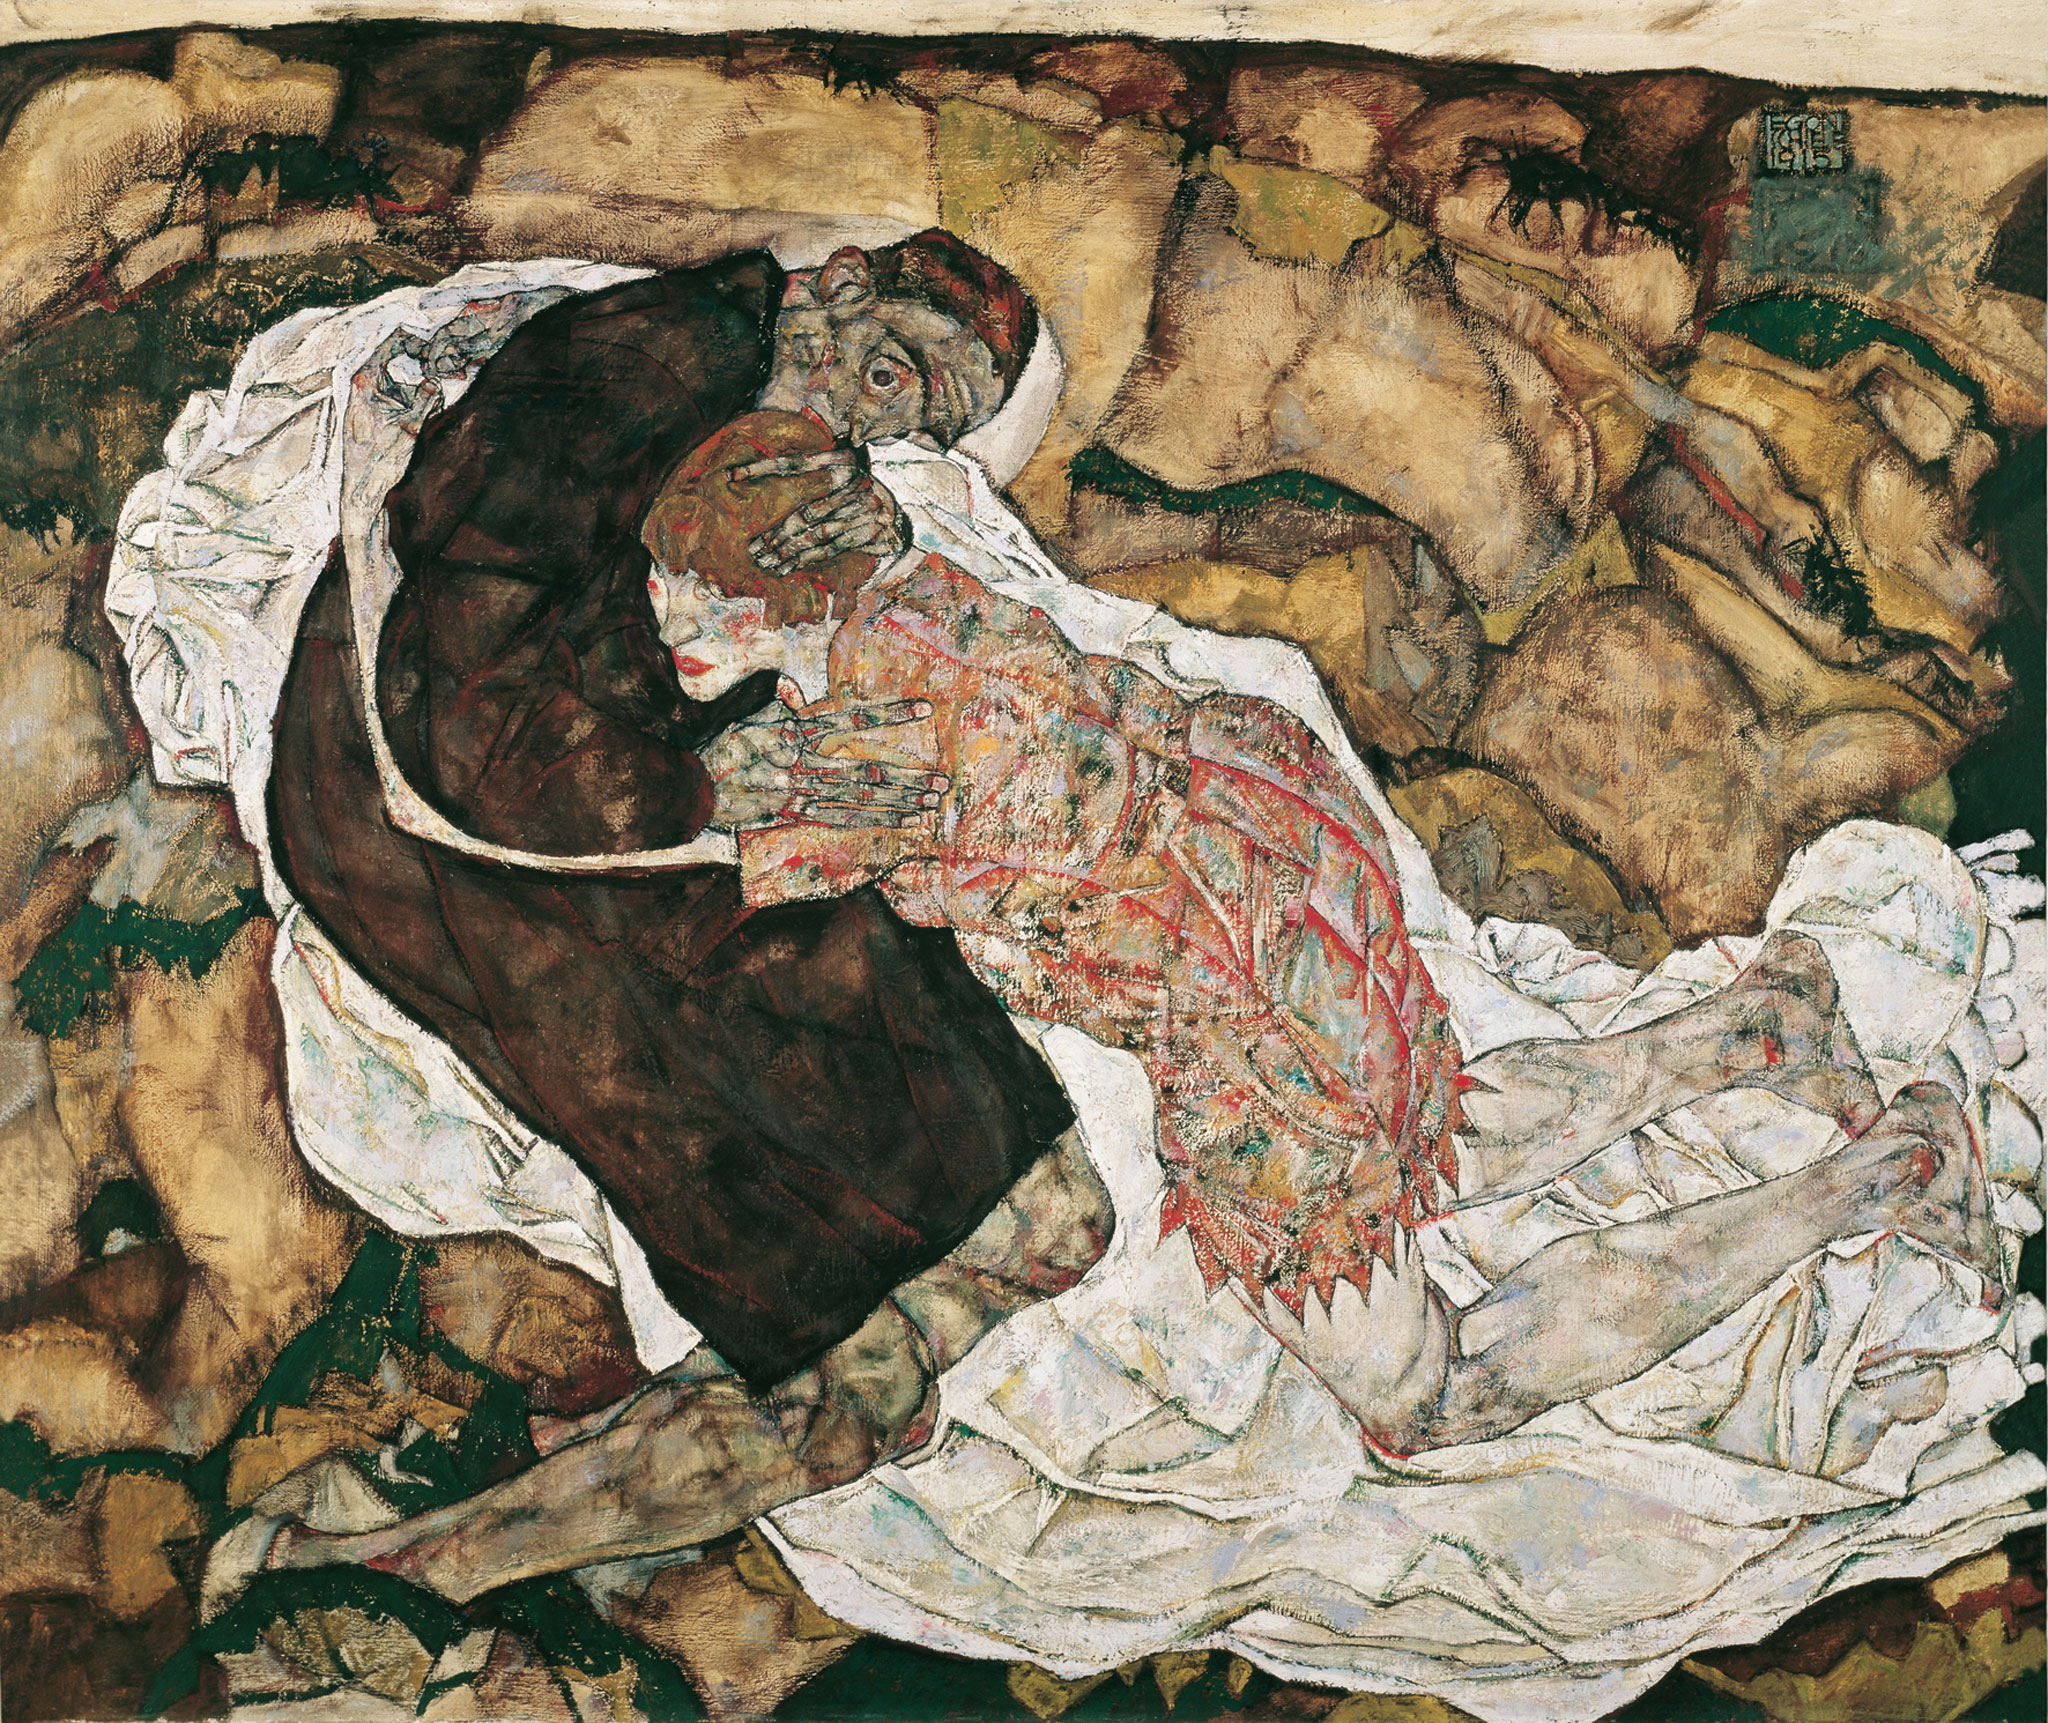 Śmierć i Dziewica by Egon Schiele - 1915 - 89.5 x 125.5 cm 